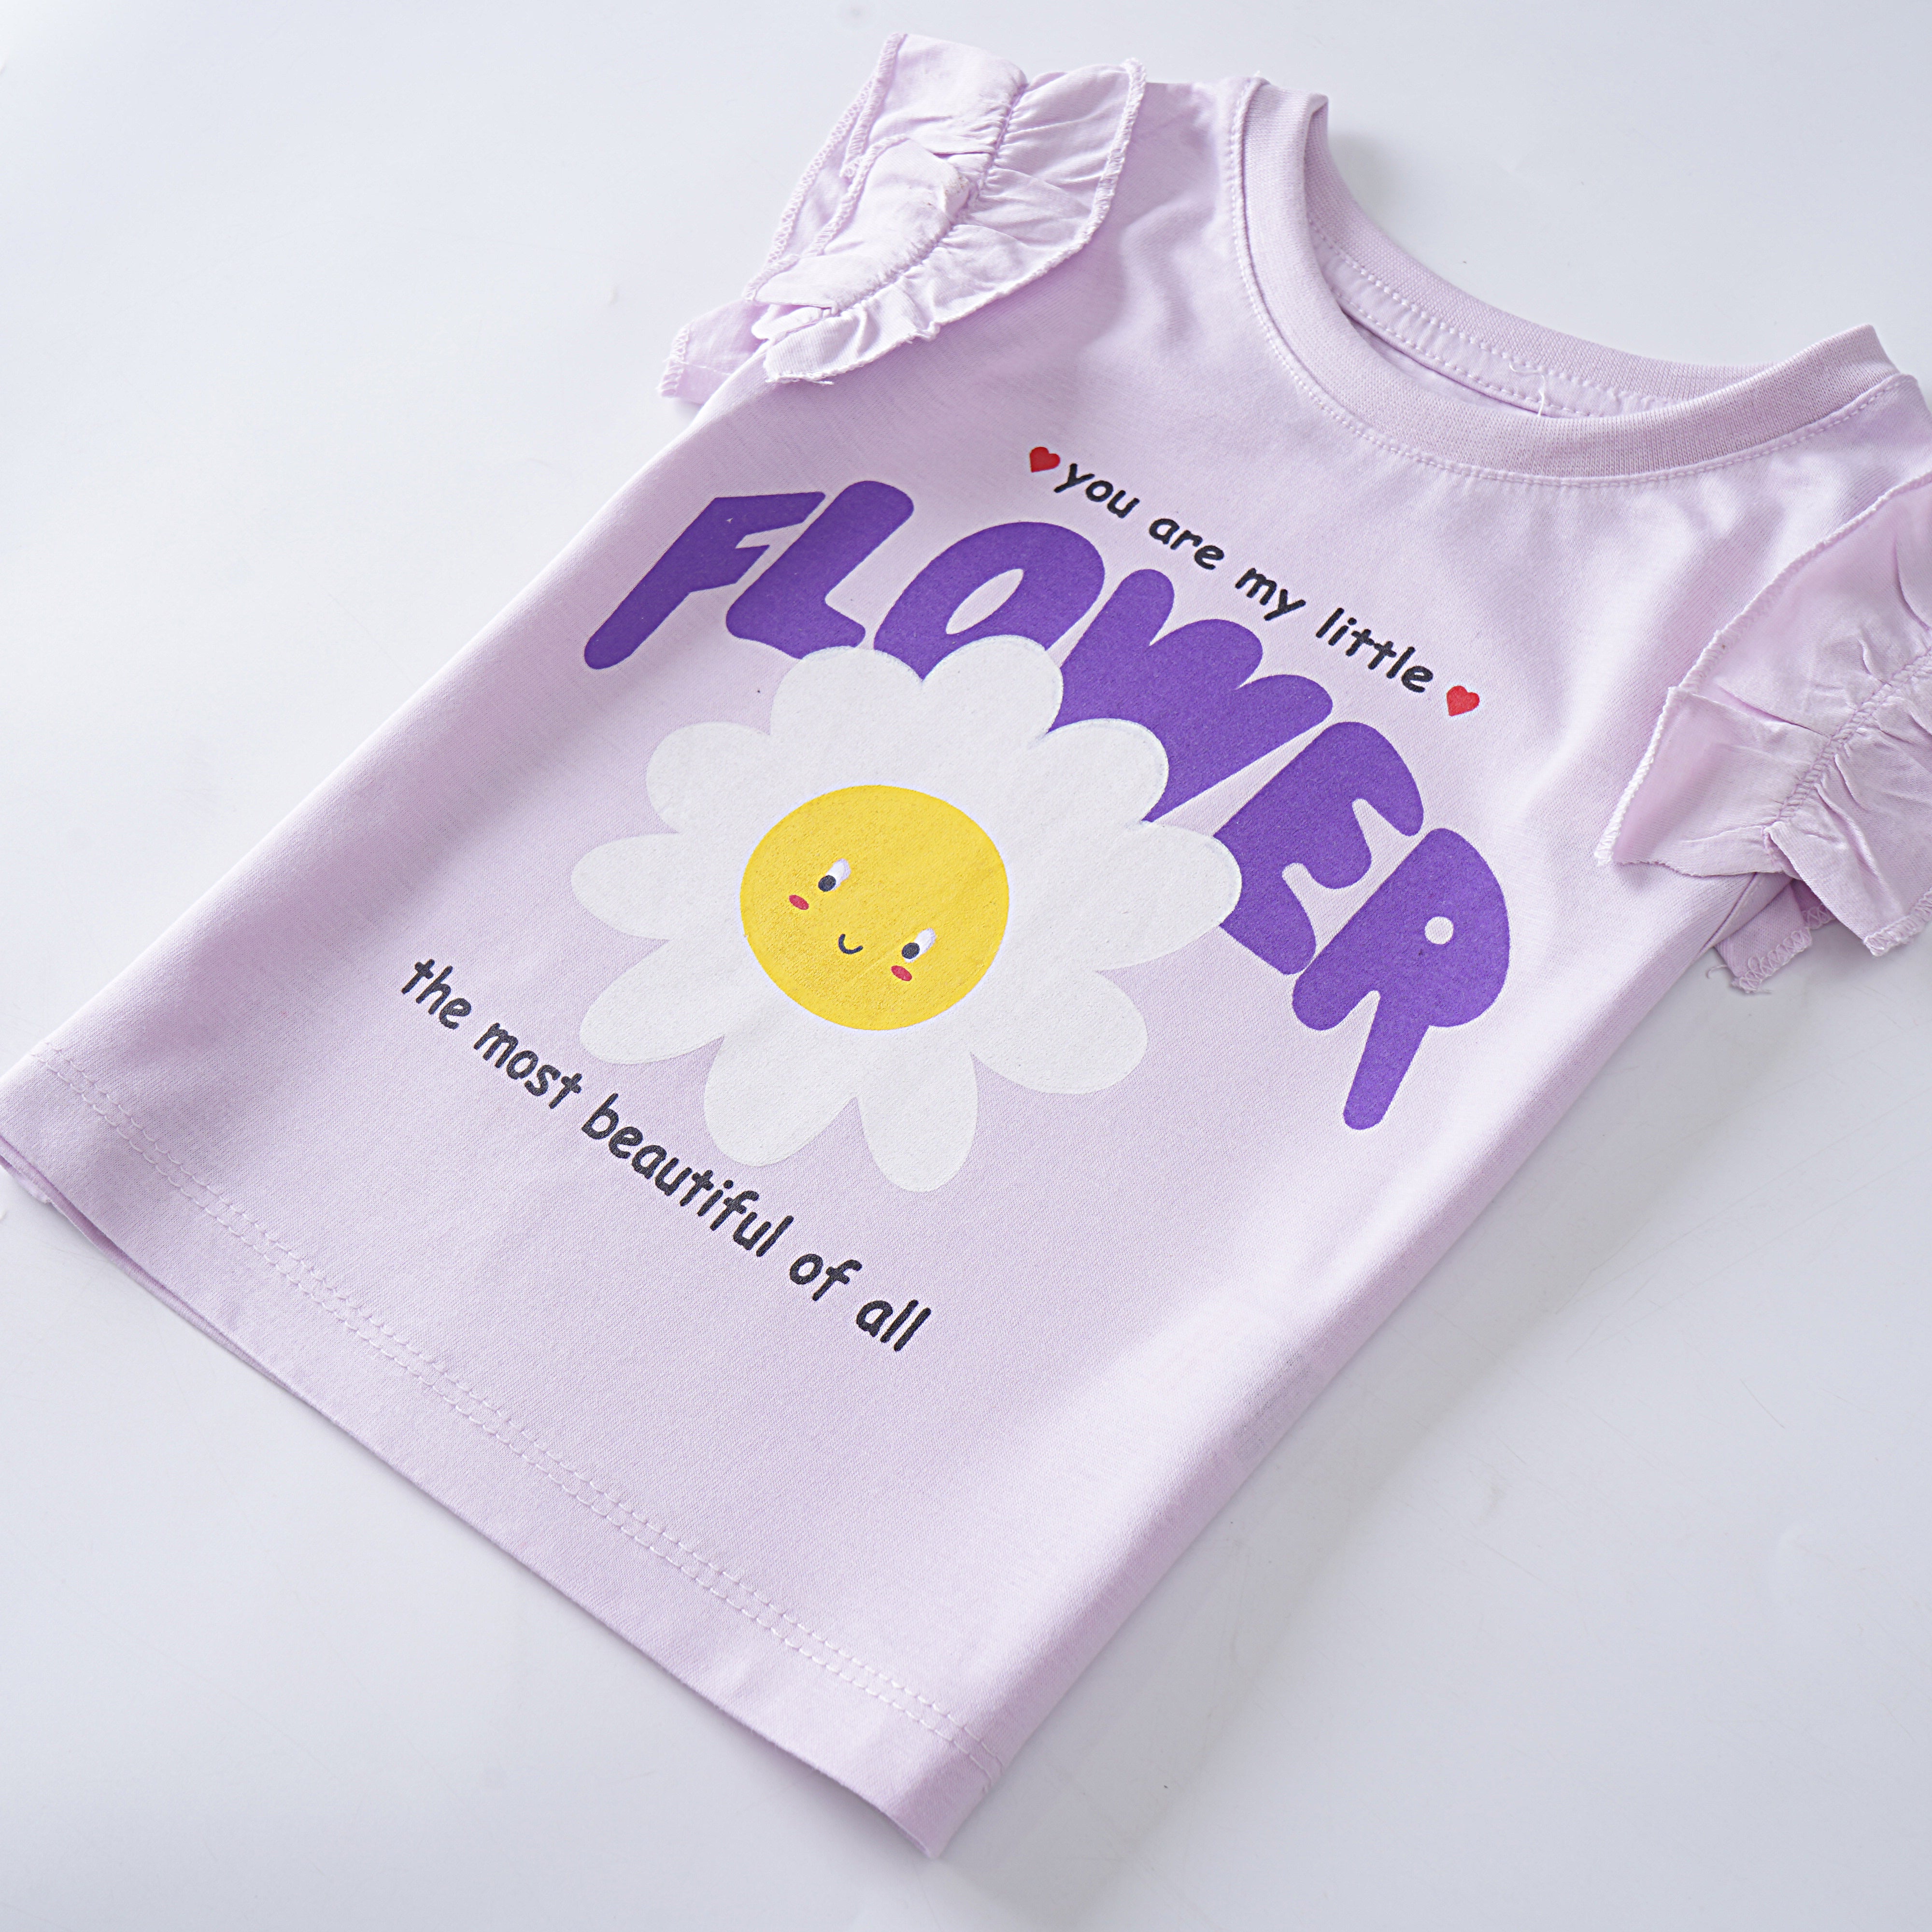 Girls H/S t shirt (Flower)